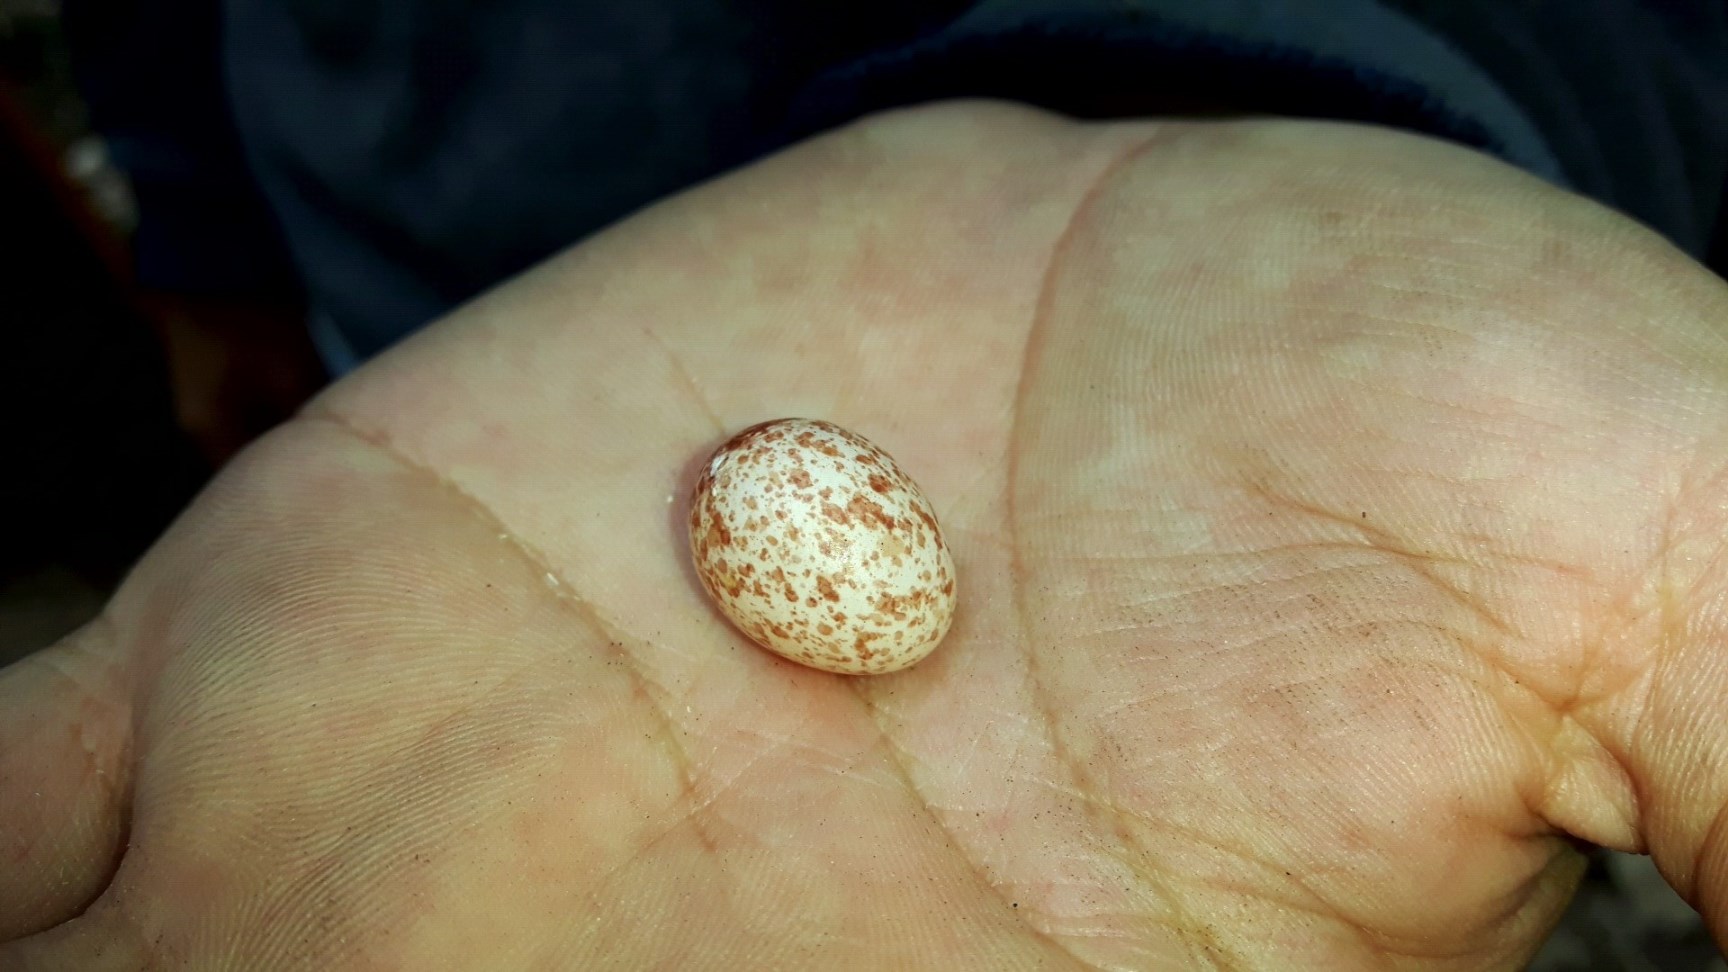 Œuf de la Sittelle kabyle / Algerian Nuthatch egg (infertile)